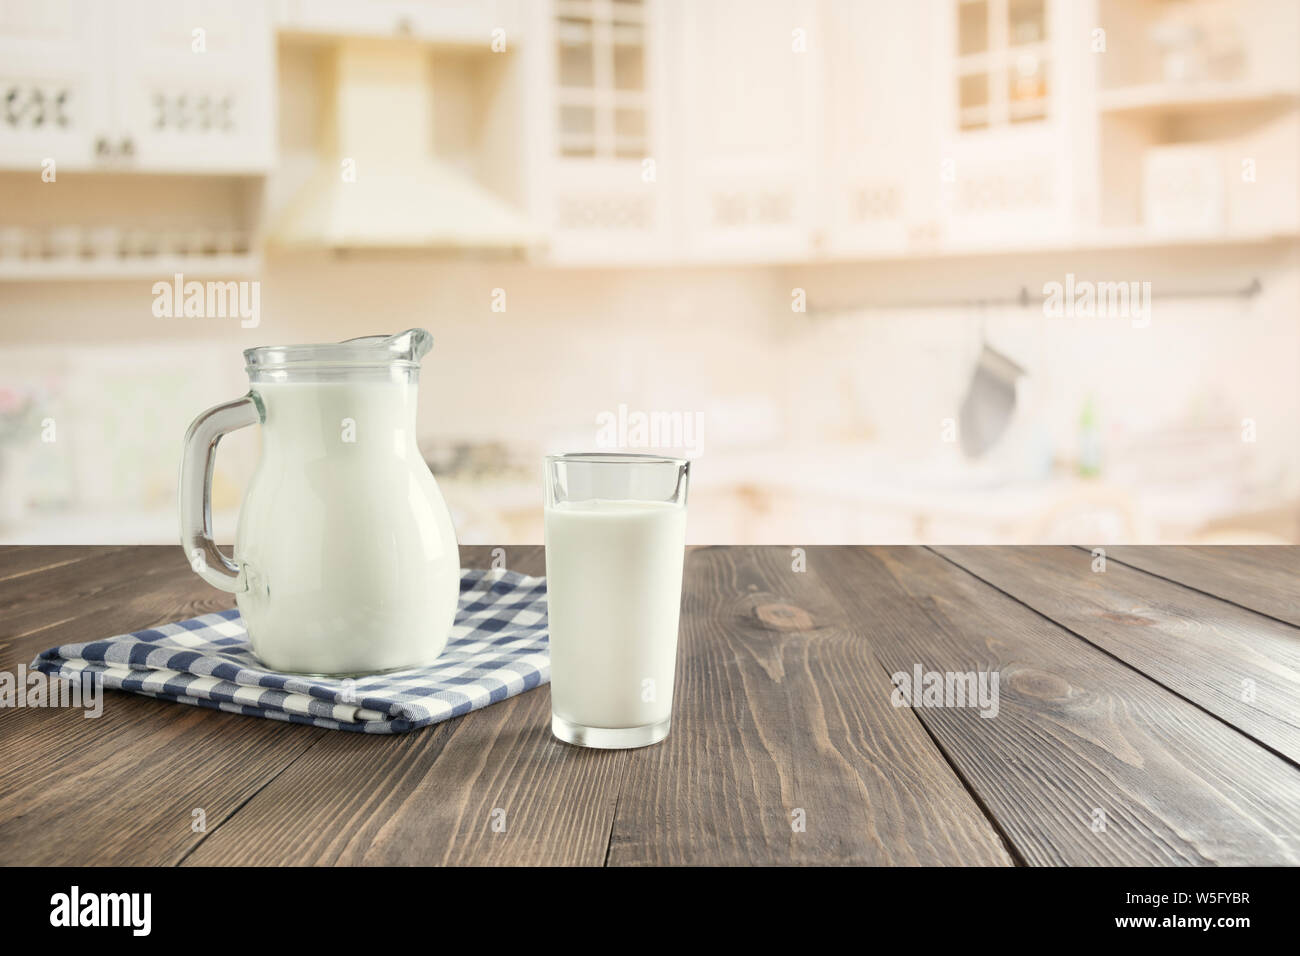 Tavolo in legno con grano sulla cucina di sfocatura dello sfondo in camera per Montage prodotto. Copia dello spazio. Foto Stock